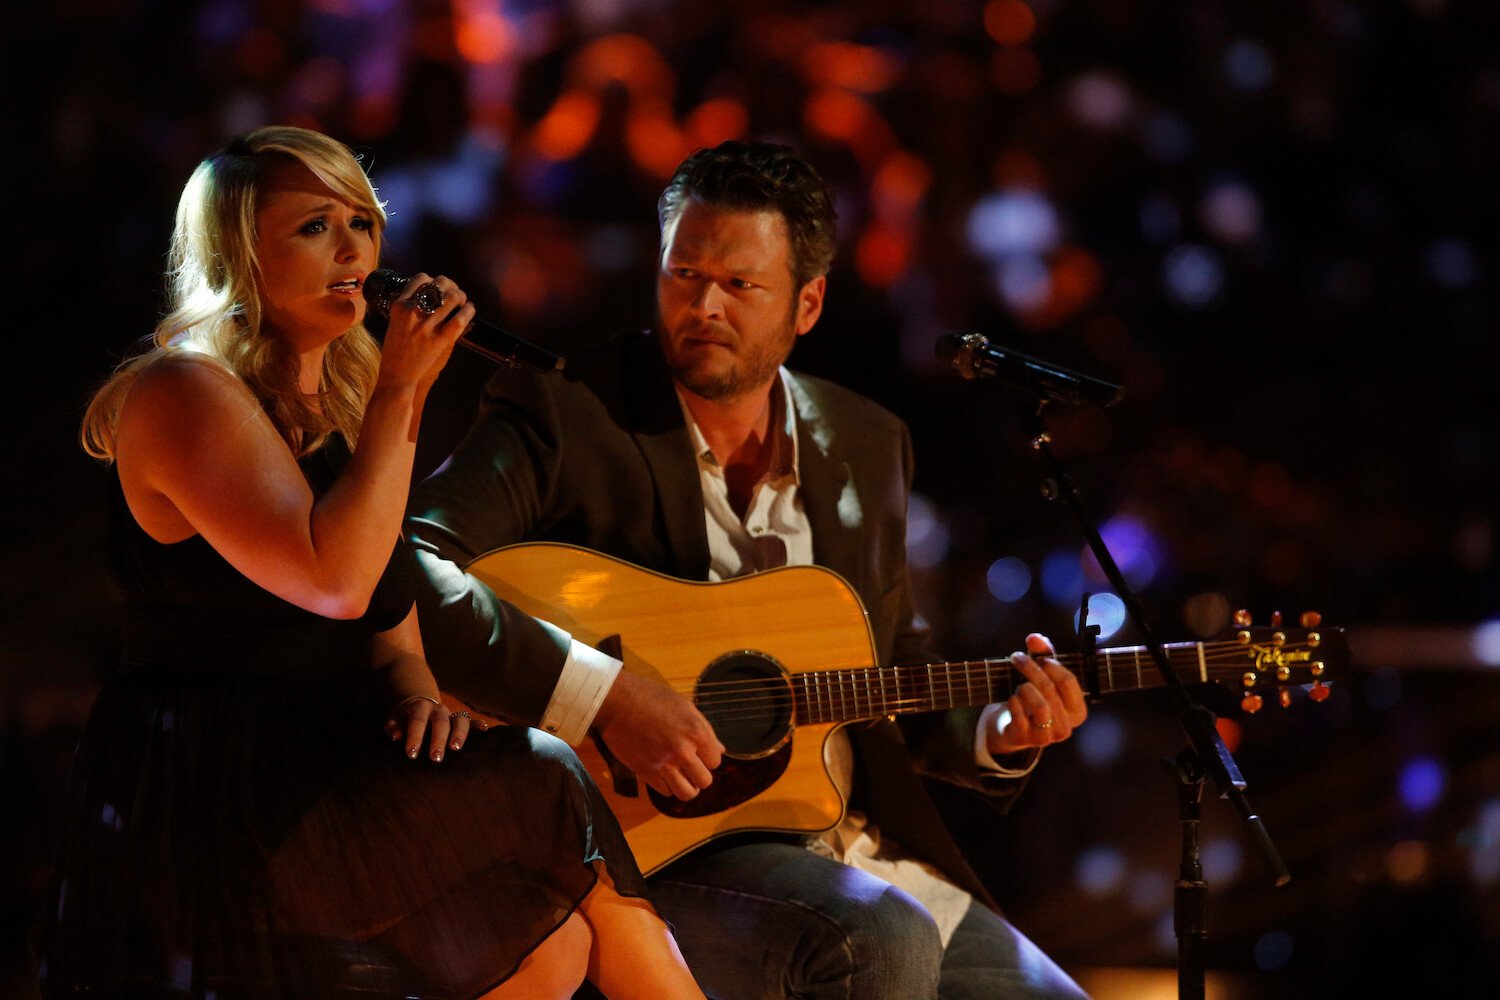 Miranda Lambert singing next to Blake Shelton playing guitar in dim lighting